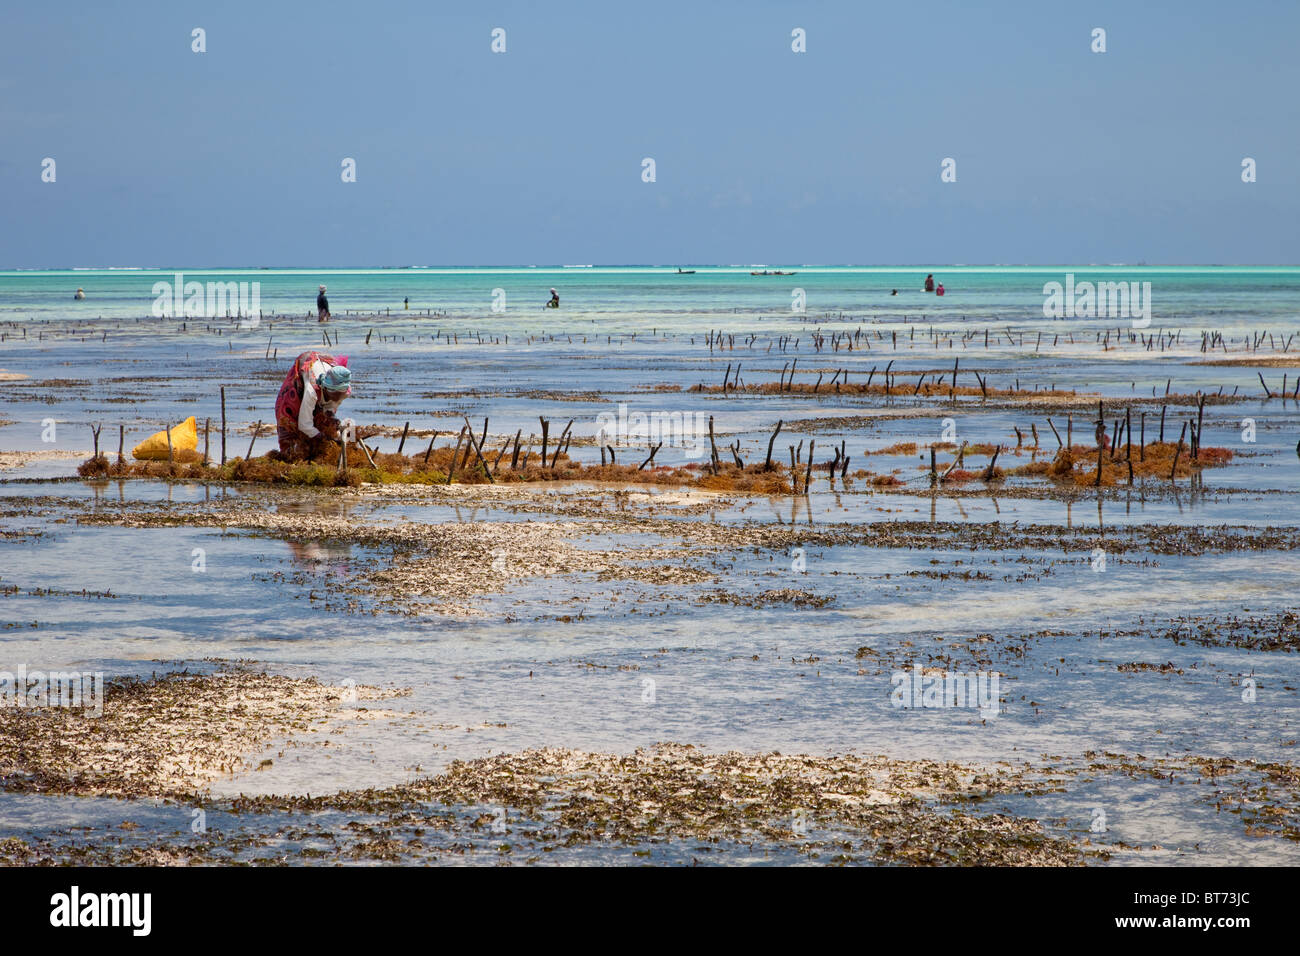 Jambiani, Zanzibar, Tanzanie. Poteaux verticaux indiquent les lignes d'algues cultivées par les femmes du village, à l'exportation vers l'Asie. Banque D'Images